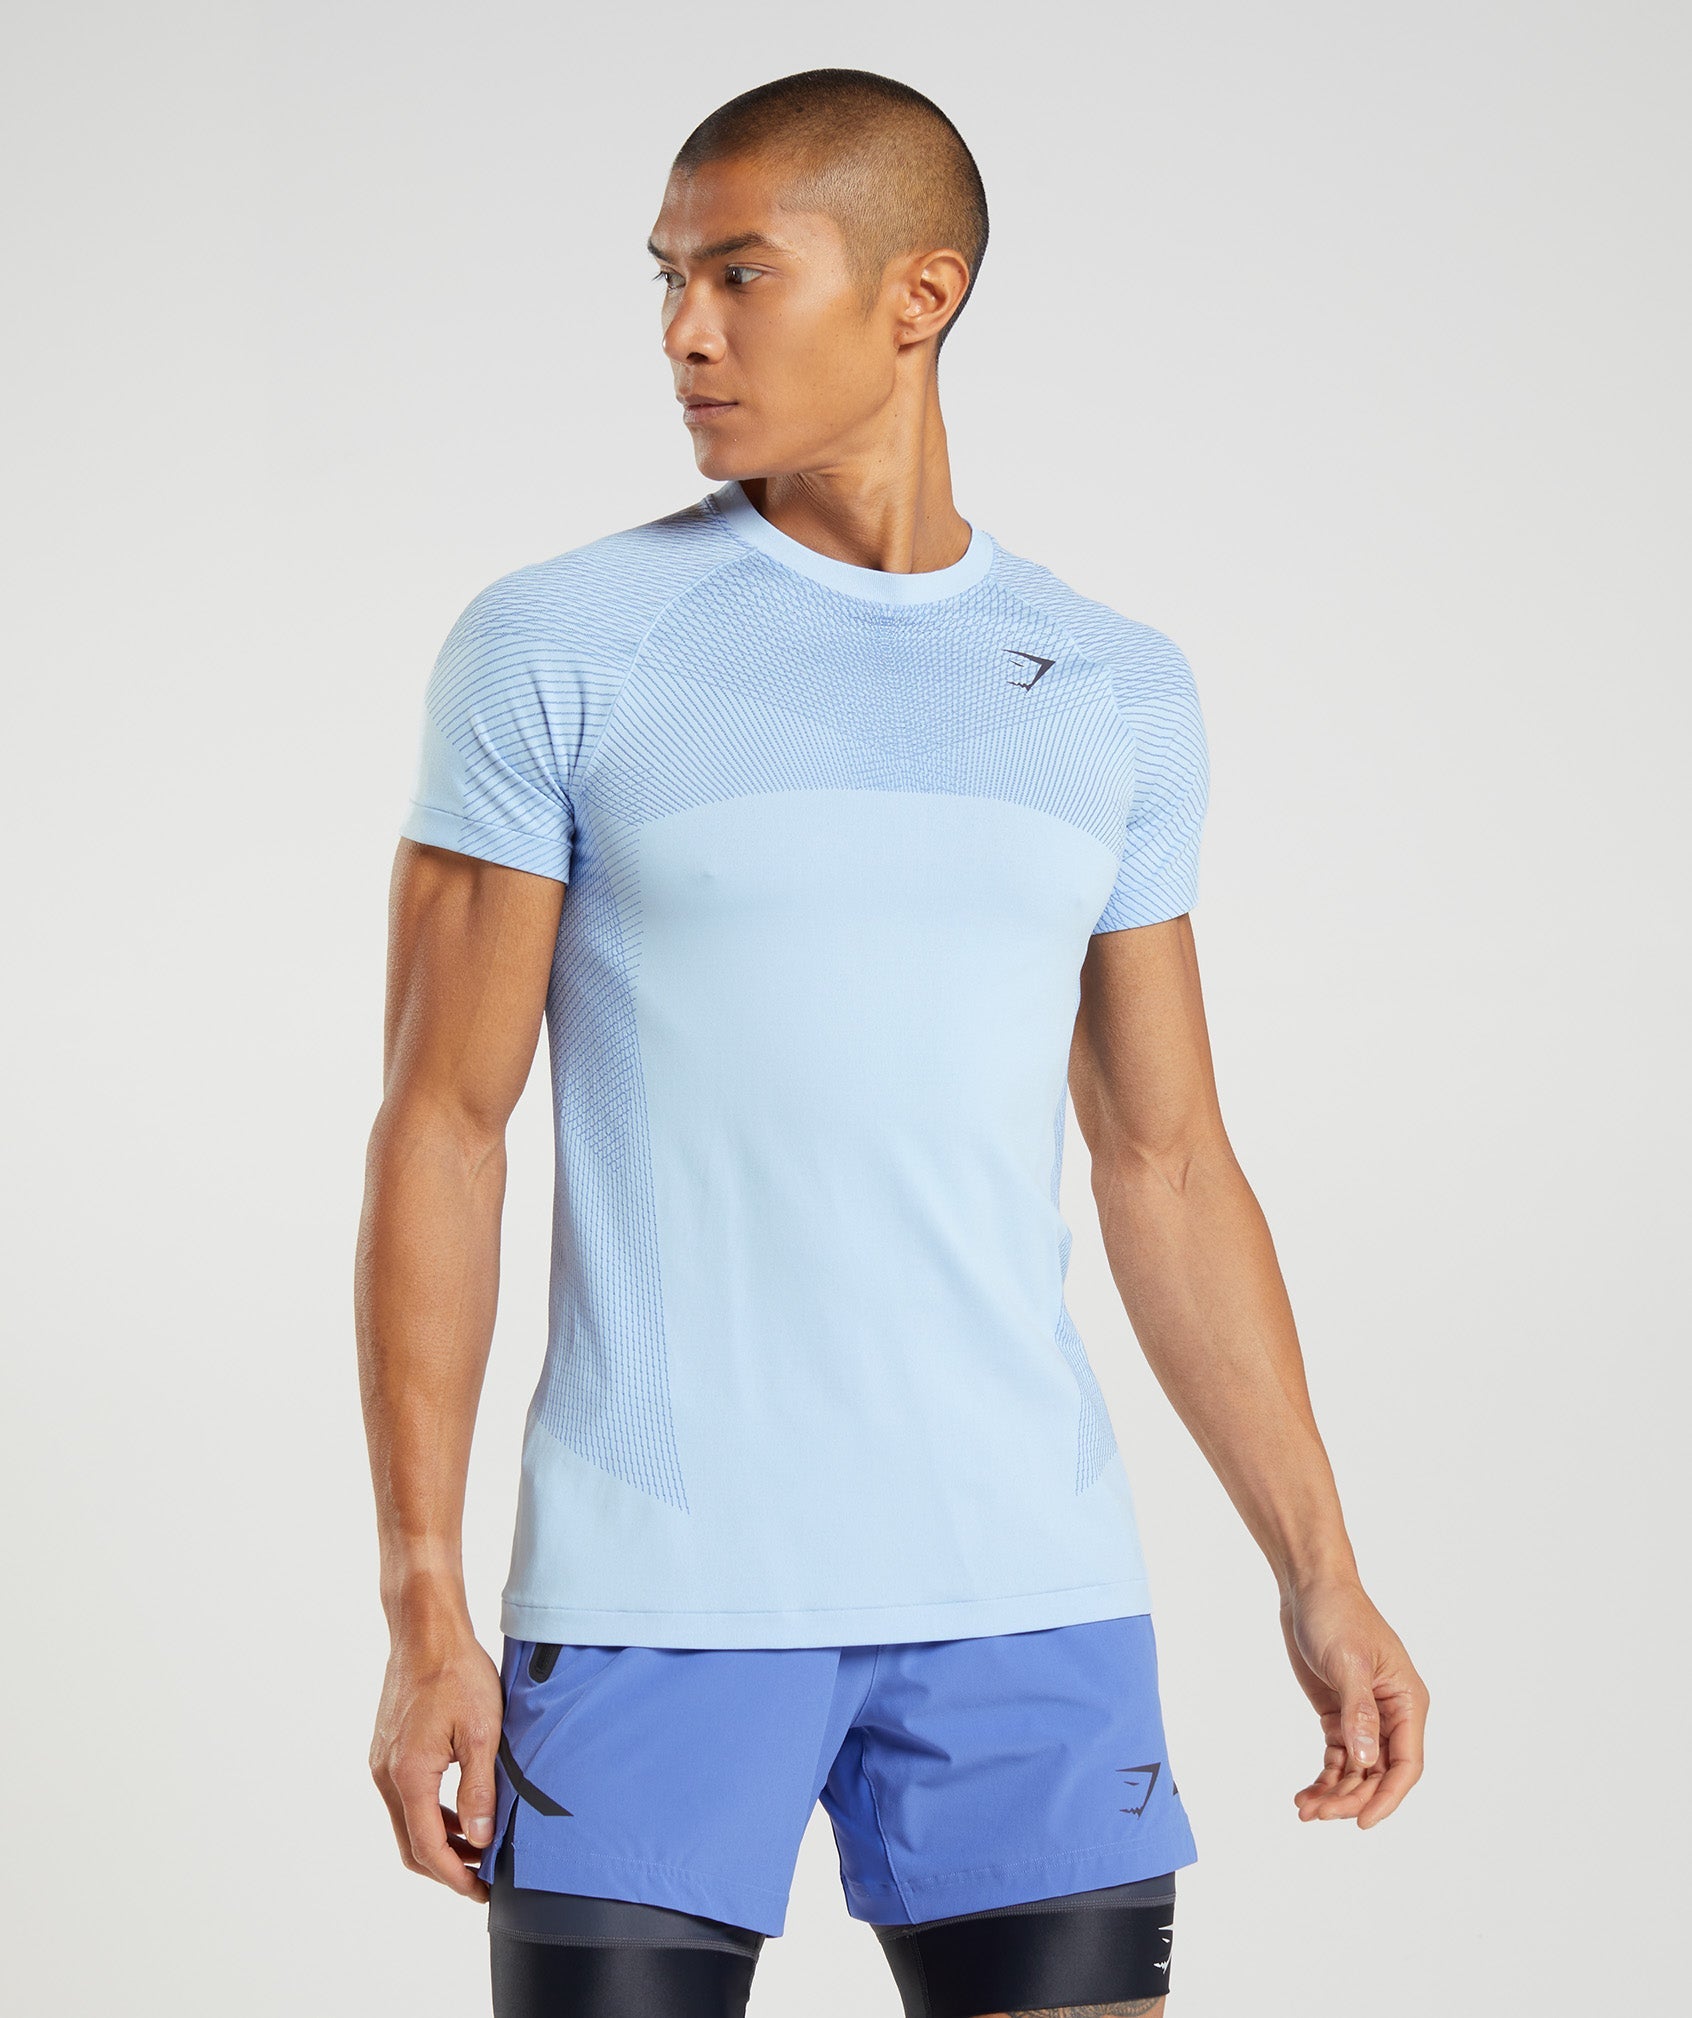 Apex Seamless T-Shirt in Linen Blue/Court Blue